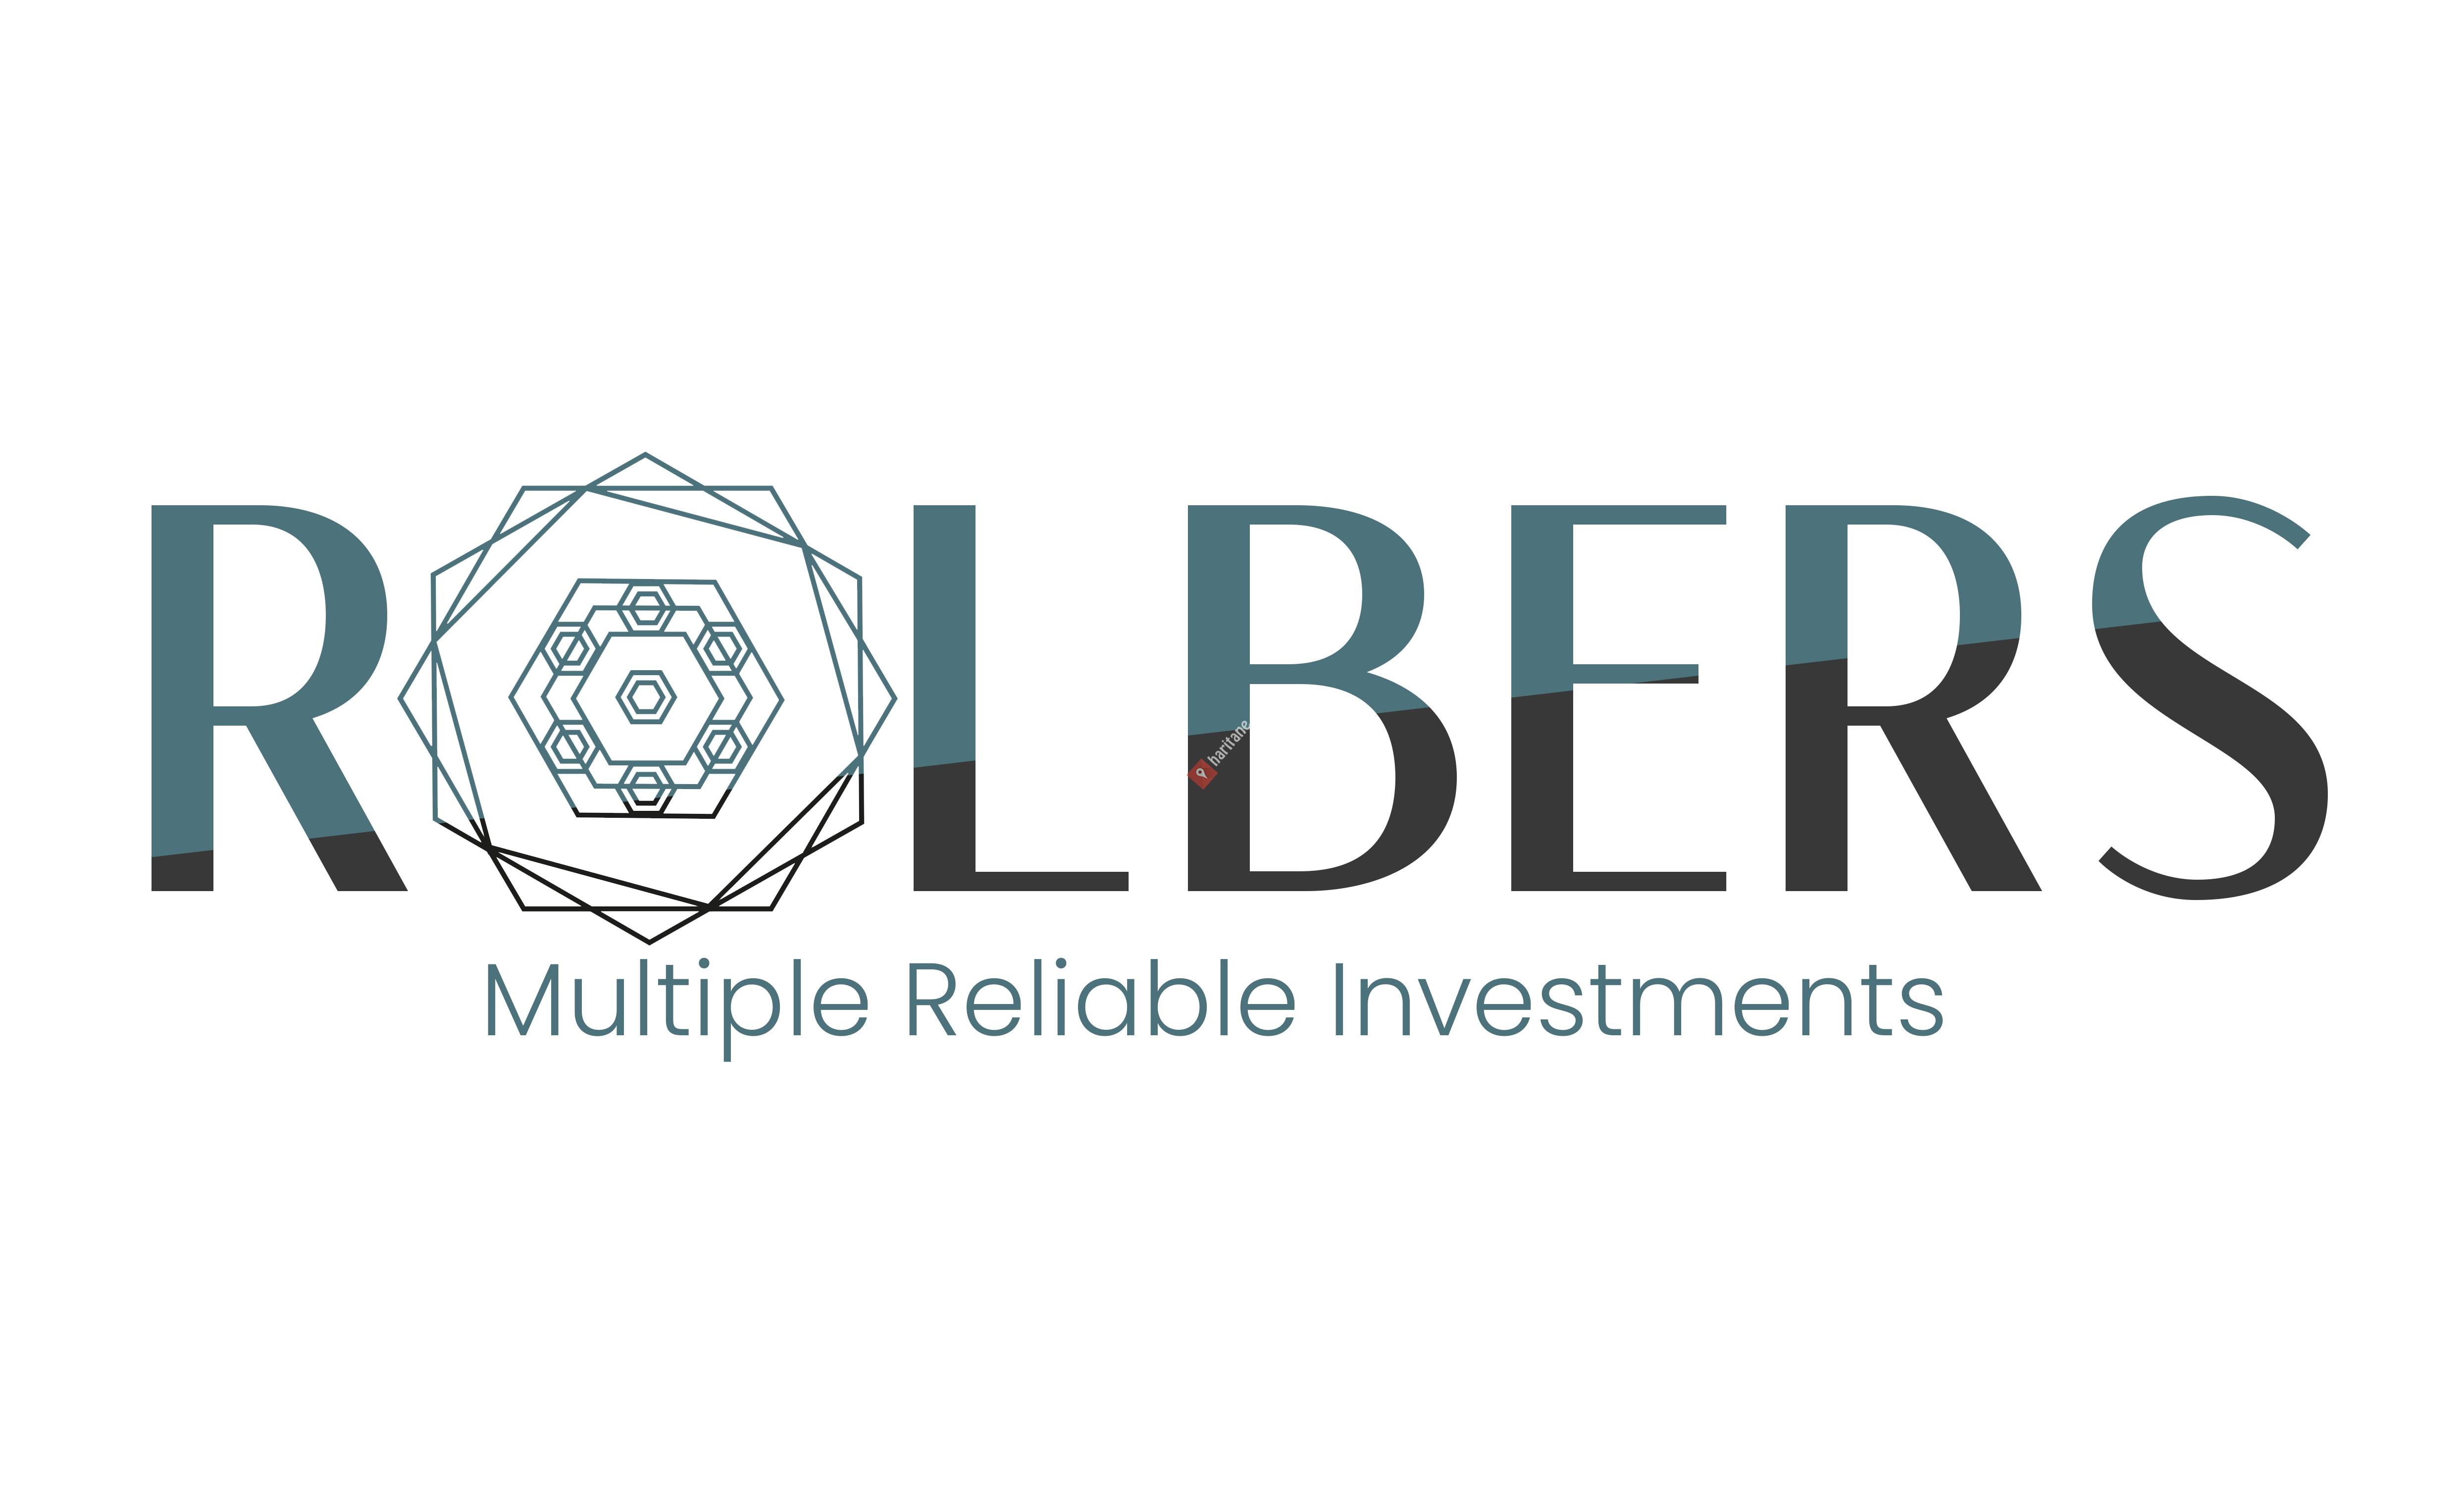 Rolbers Emlak Gayrimenkul ve Yatırım Ortaklığı